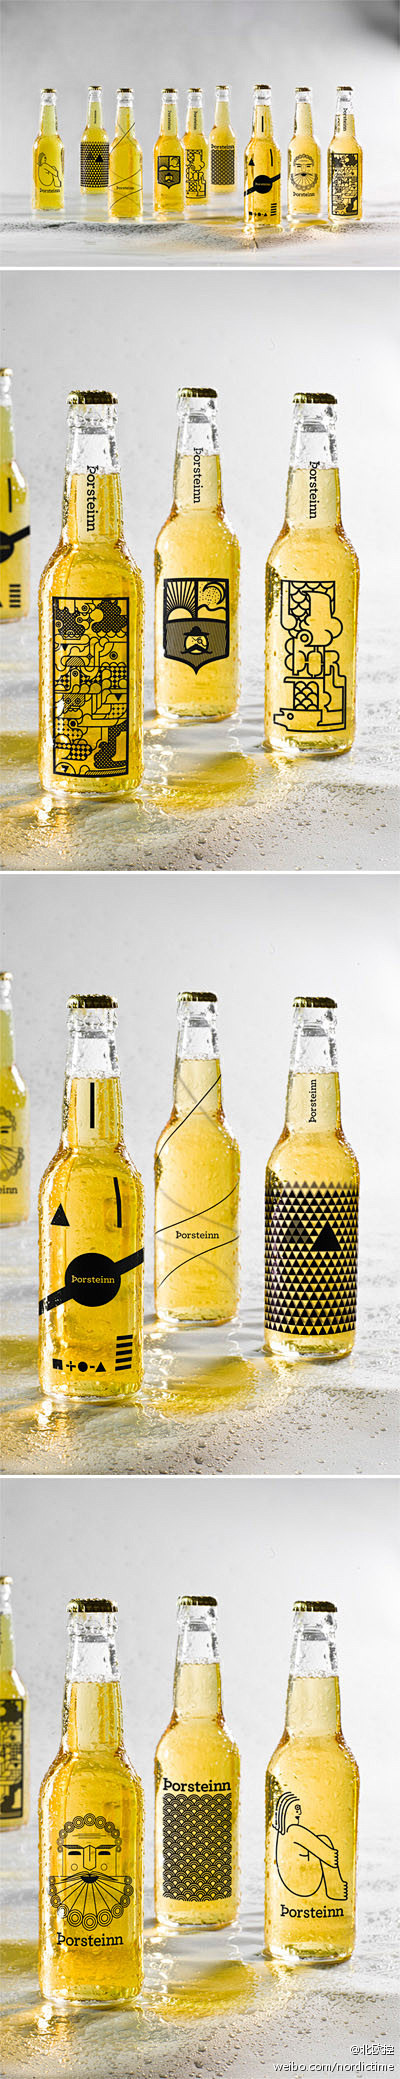 #北欧设计# 这个啤酒包装设计项目来自冰...